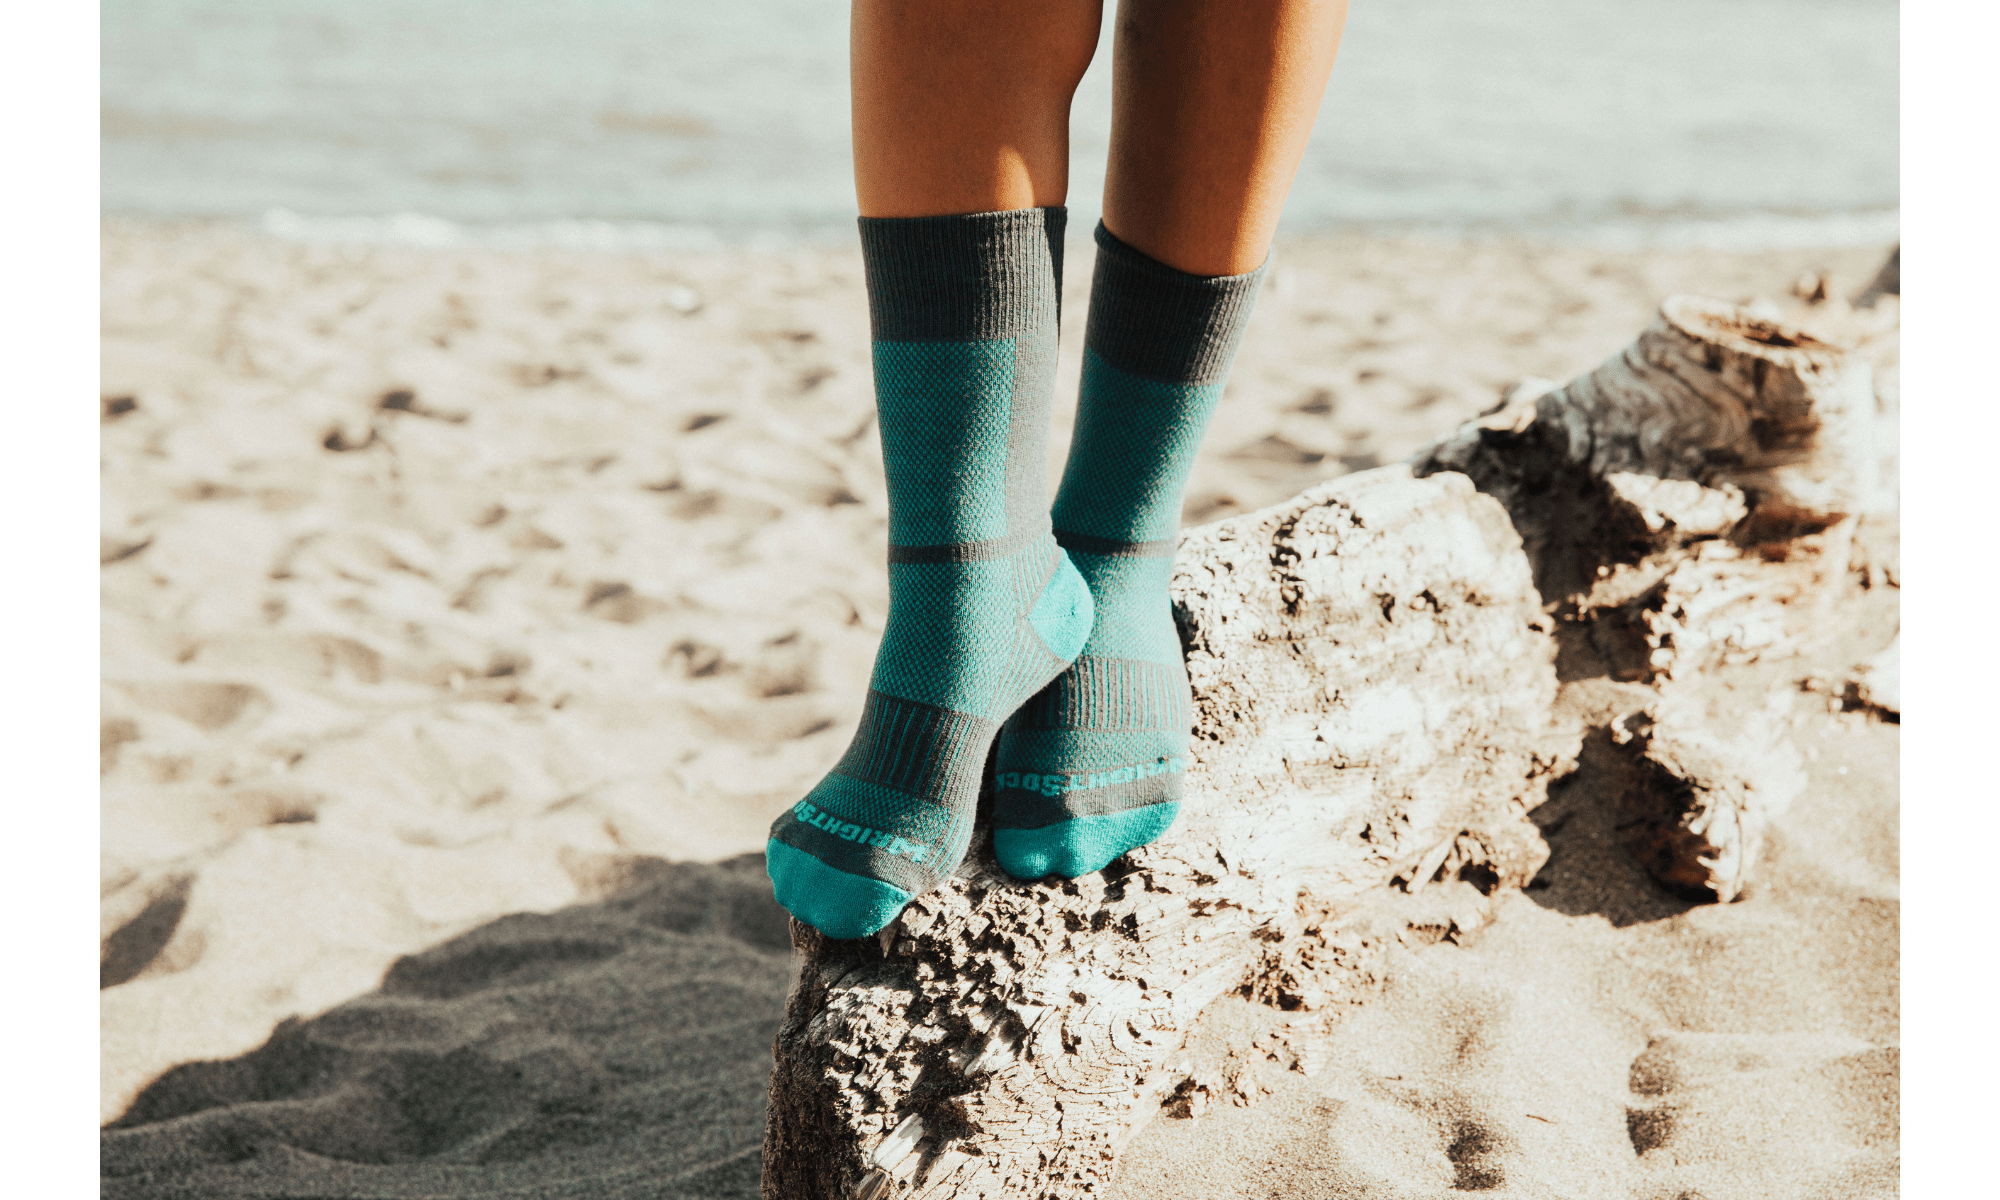 Wrightsock - Anti Blister Socks for Women